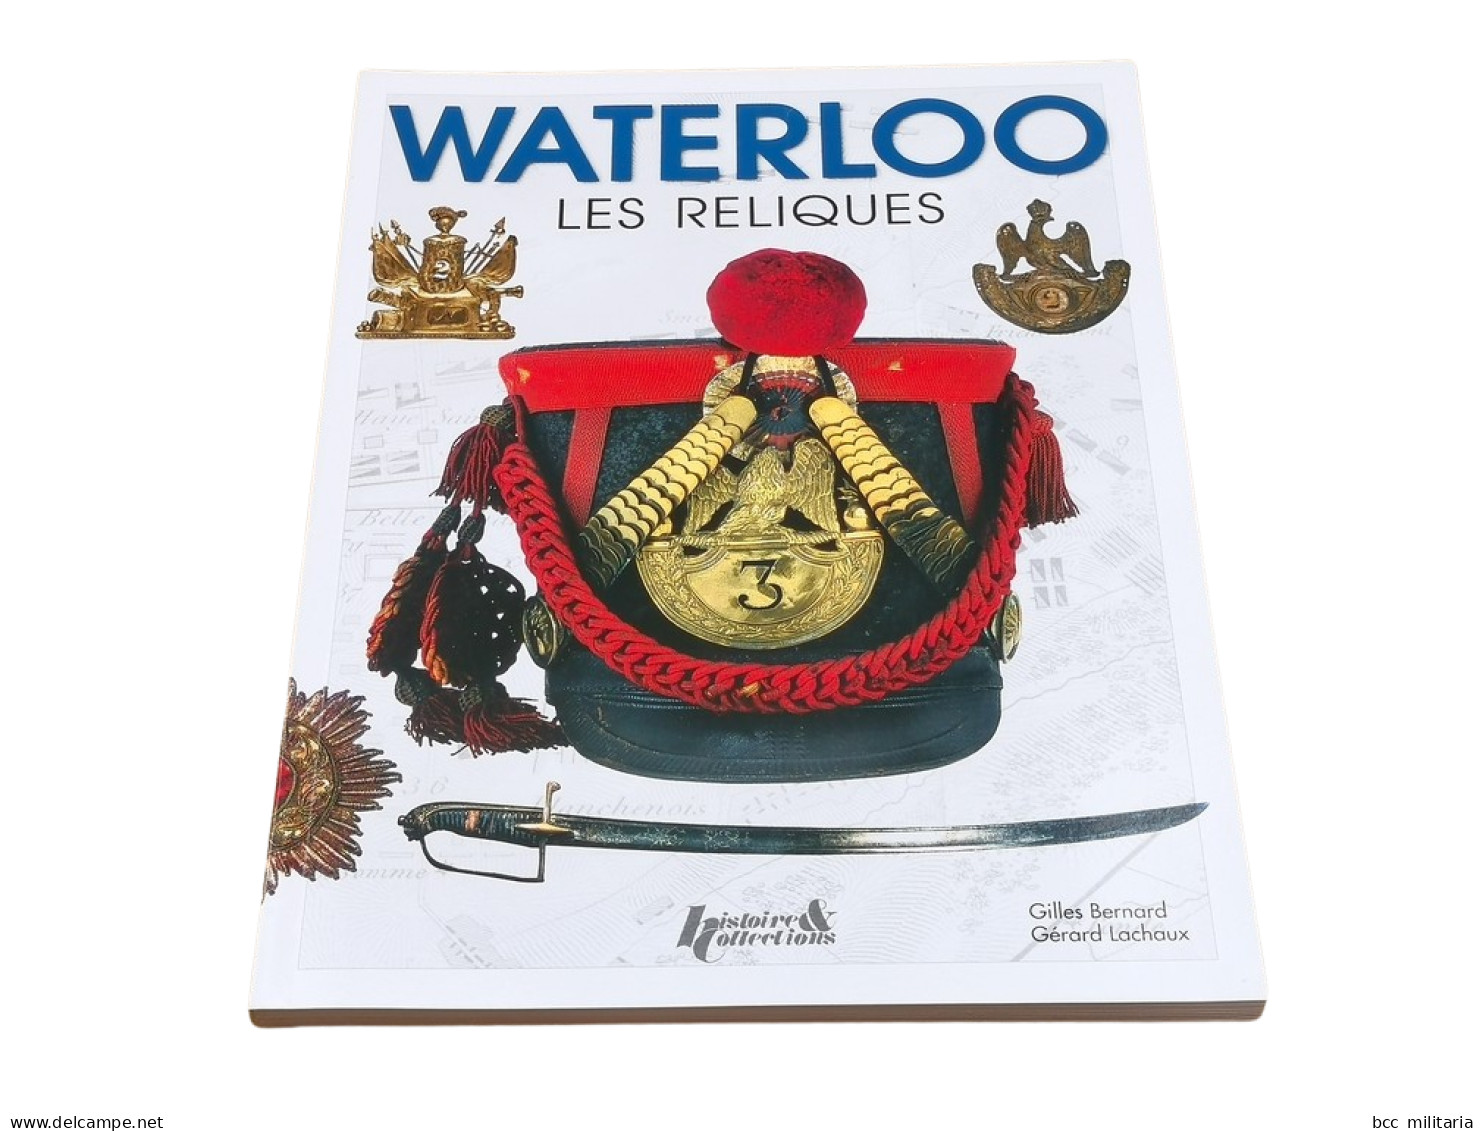 WATERLOO, LES RELIQUES Histoire Et Collections 128 Pages Livre Neuf - Frans